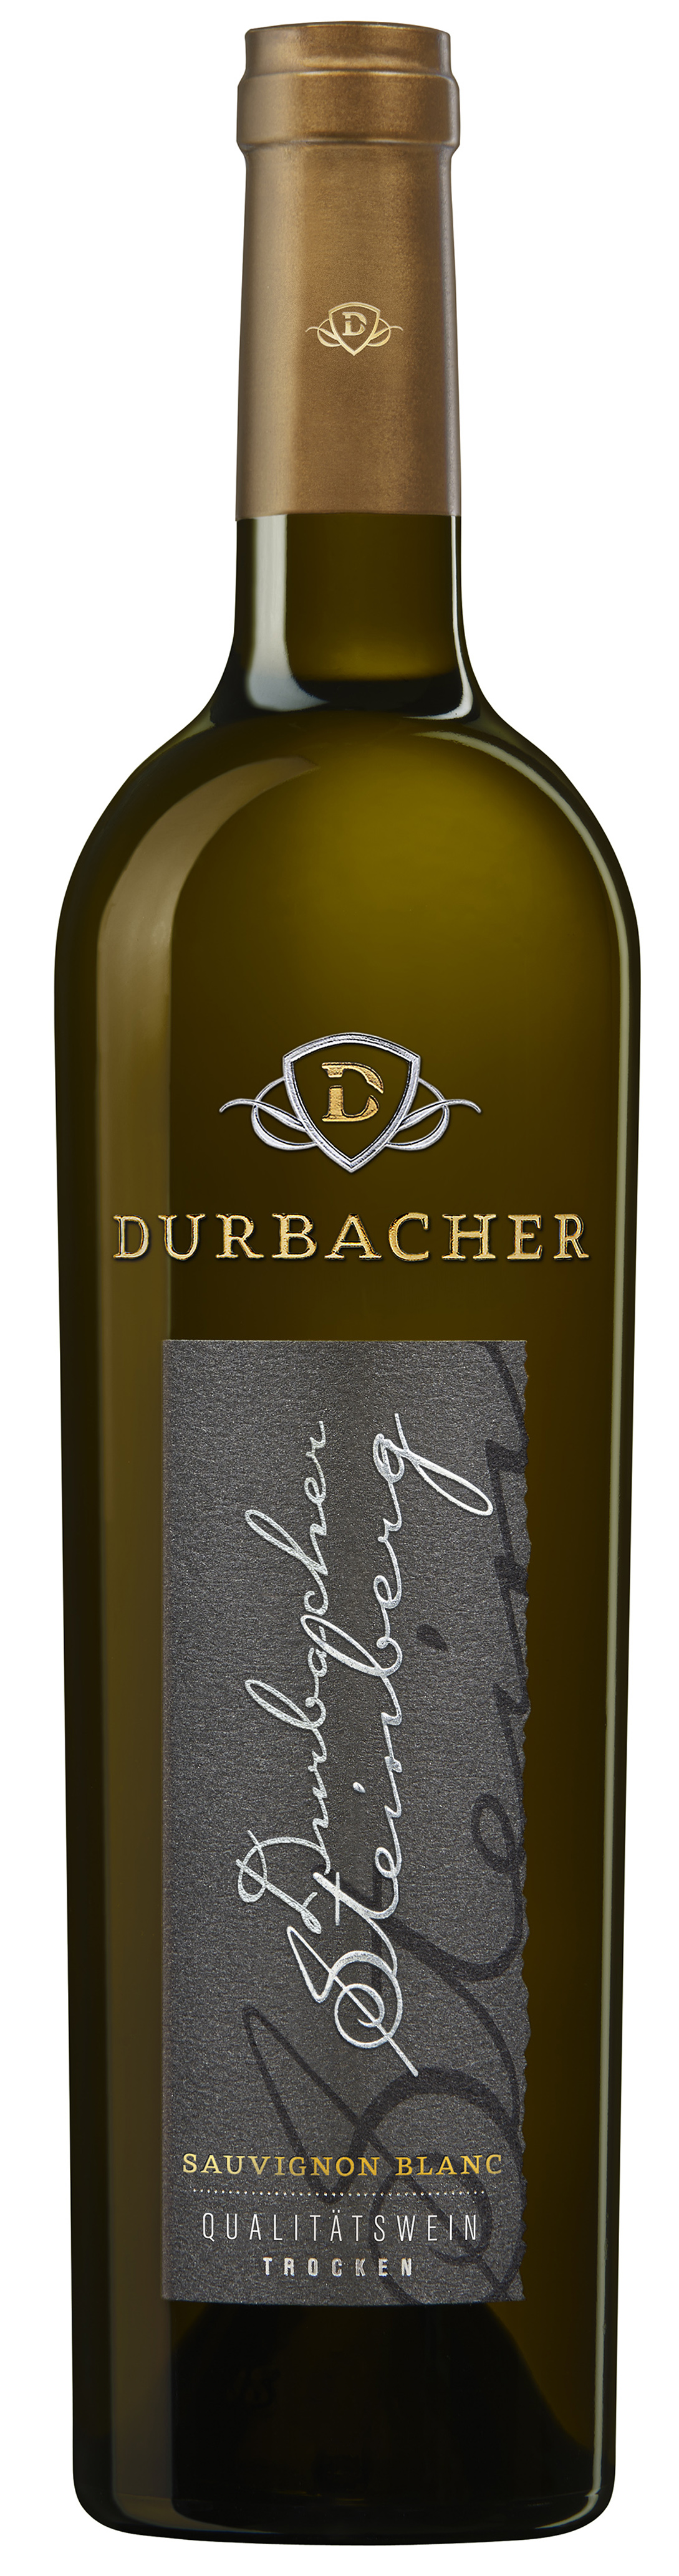 Durbacher Steinberg Sauvignon Blanc Qualitätswein